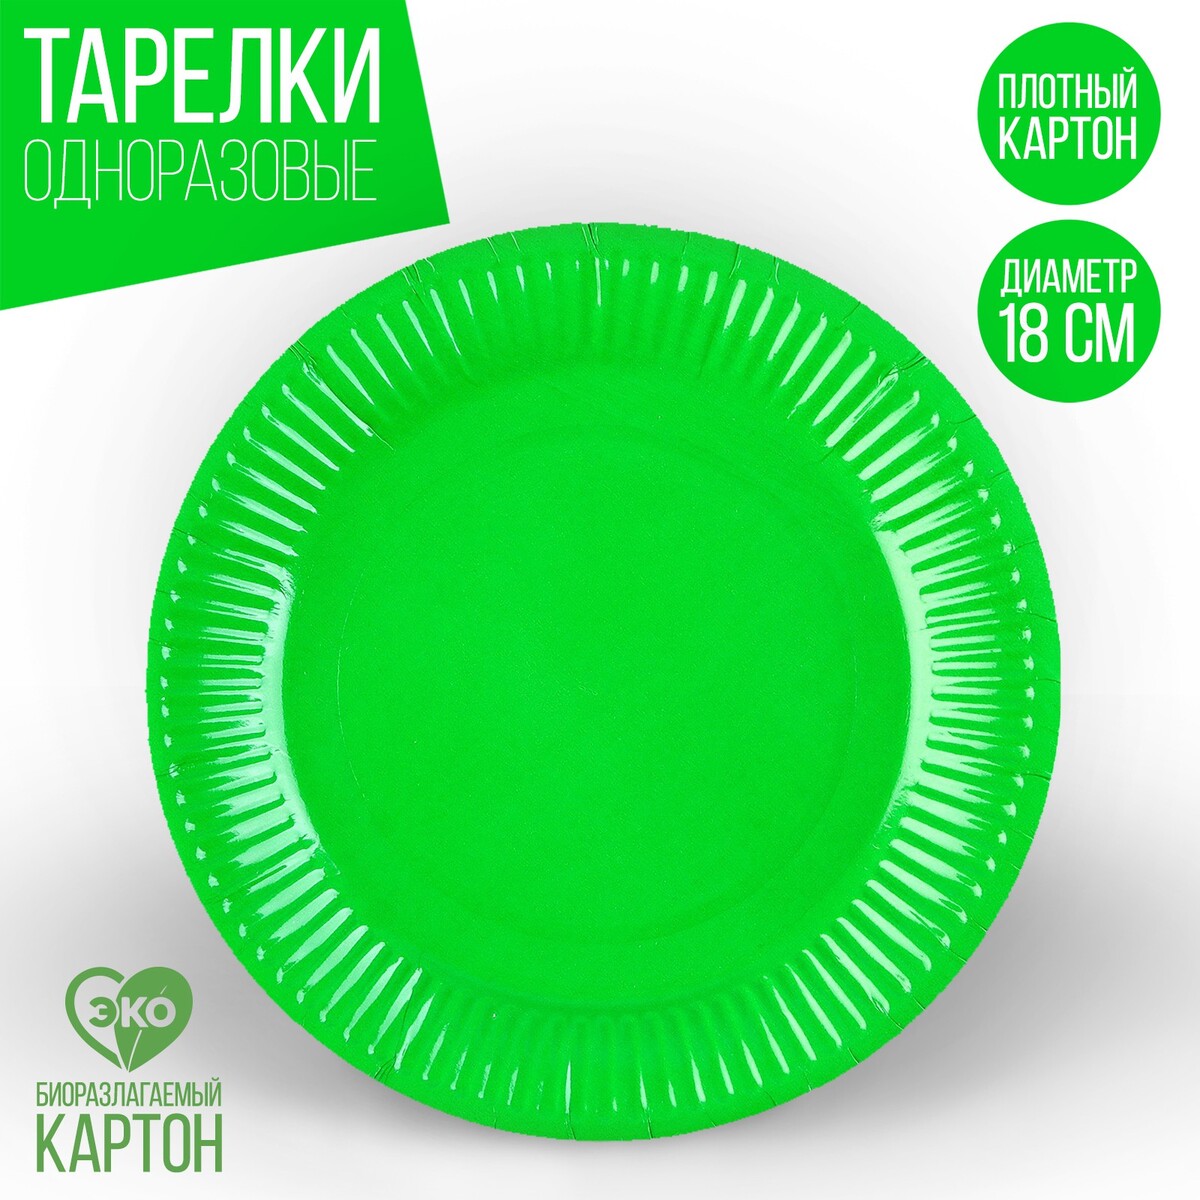 Тарелка одноразовая бумажная однотонная, зеленый цвет 18 см, набор 10 штук бумажная растушёвка сонет 8 штук